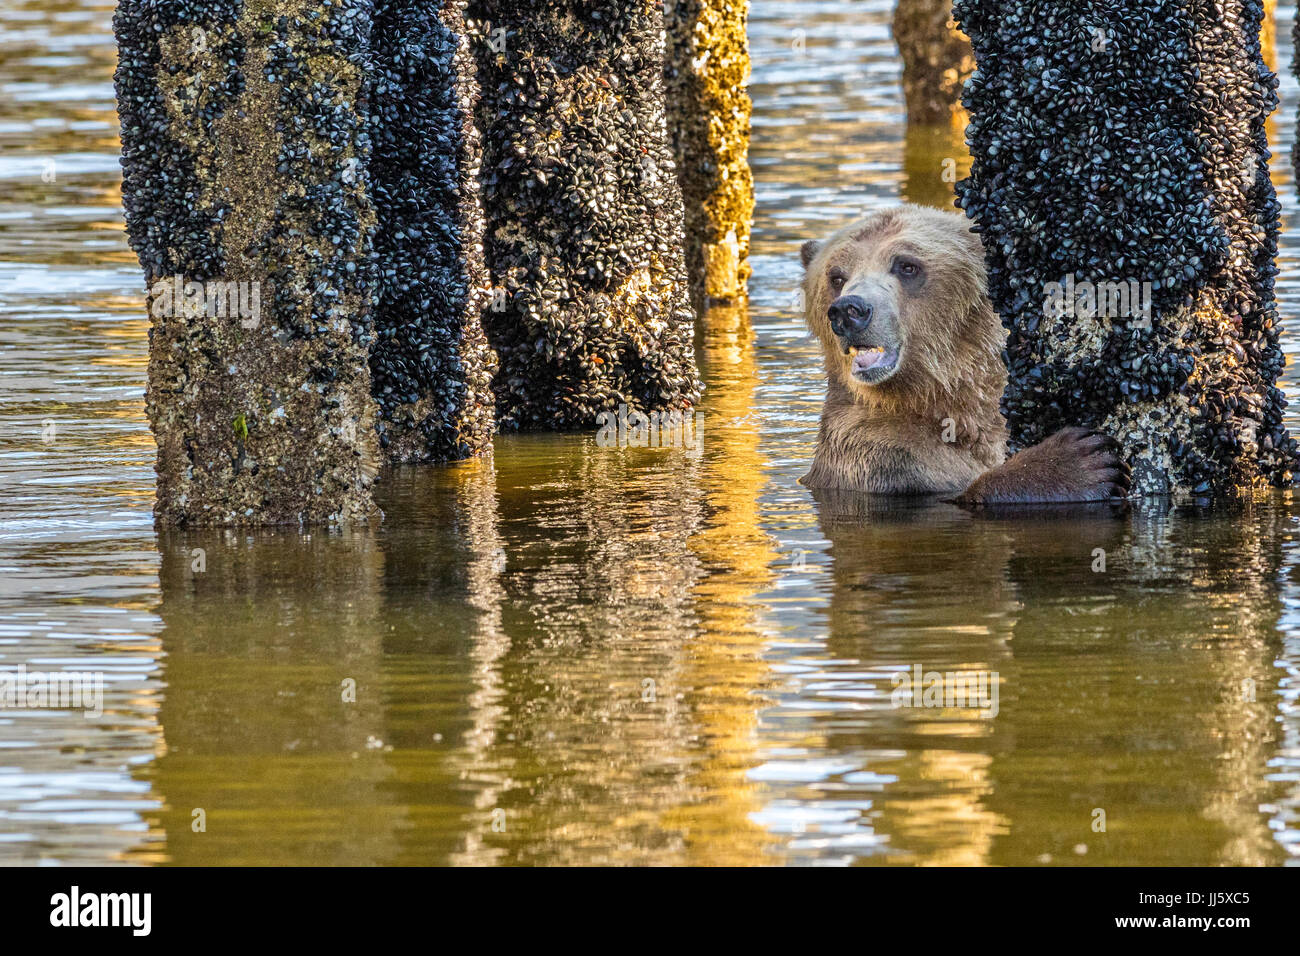 L'alimentation de l'ours grizzli durant la marée basse sur les moules qui sont en croissance sur un vieux pieux à Glendale Cove, dans la belle ville de Knight Inlet, en Colombie-Britannique, Cana Banque D'Images